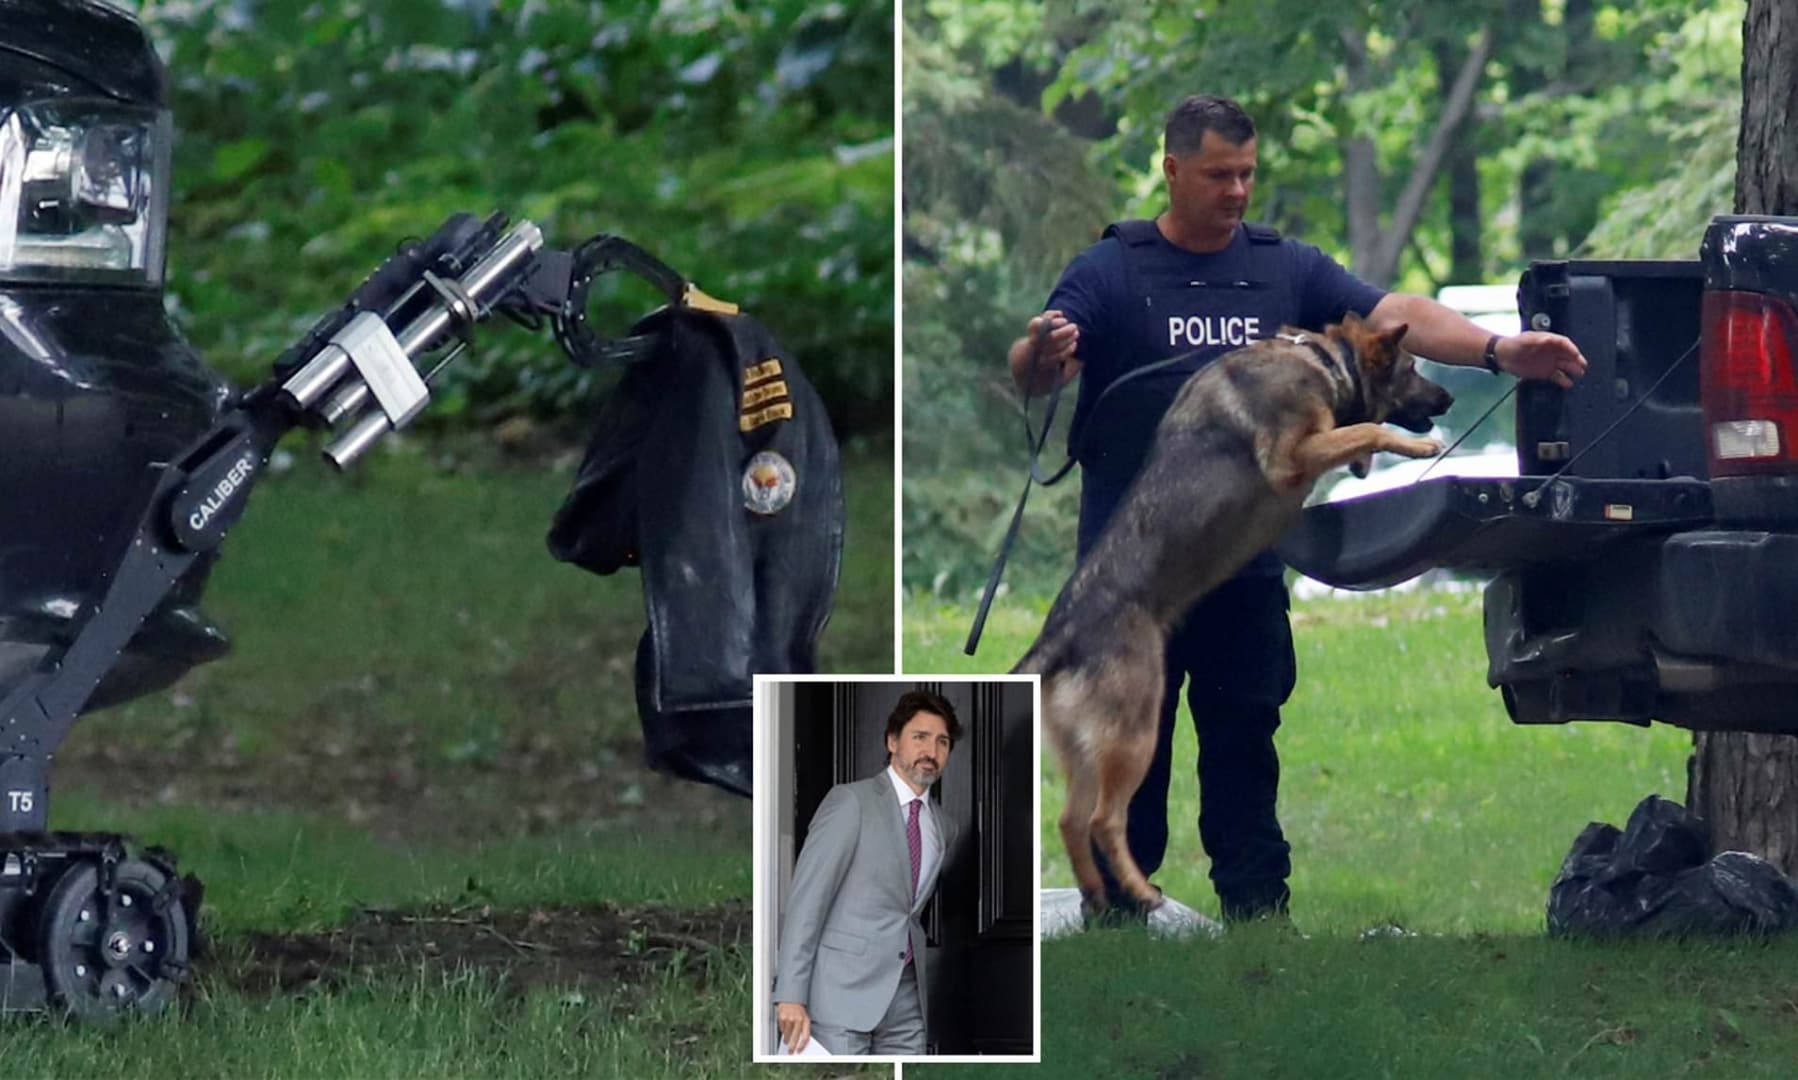 Teherautóval rontott be egy fegyveres férfi a kanadai kormányfő lakhelyére